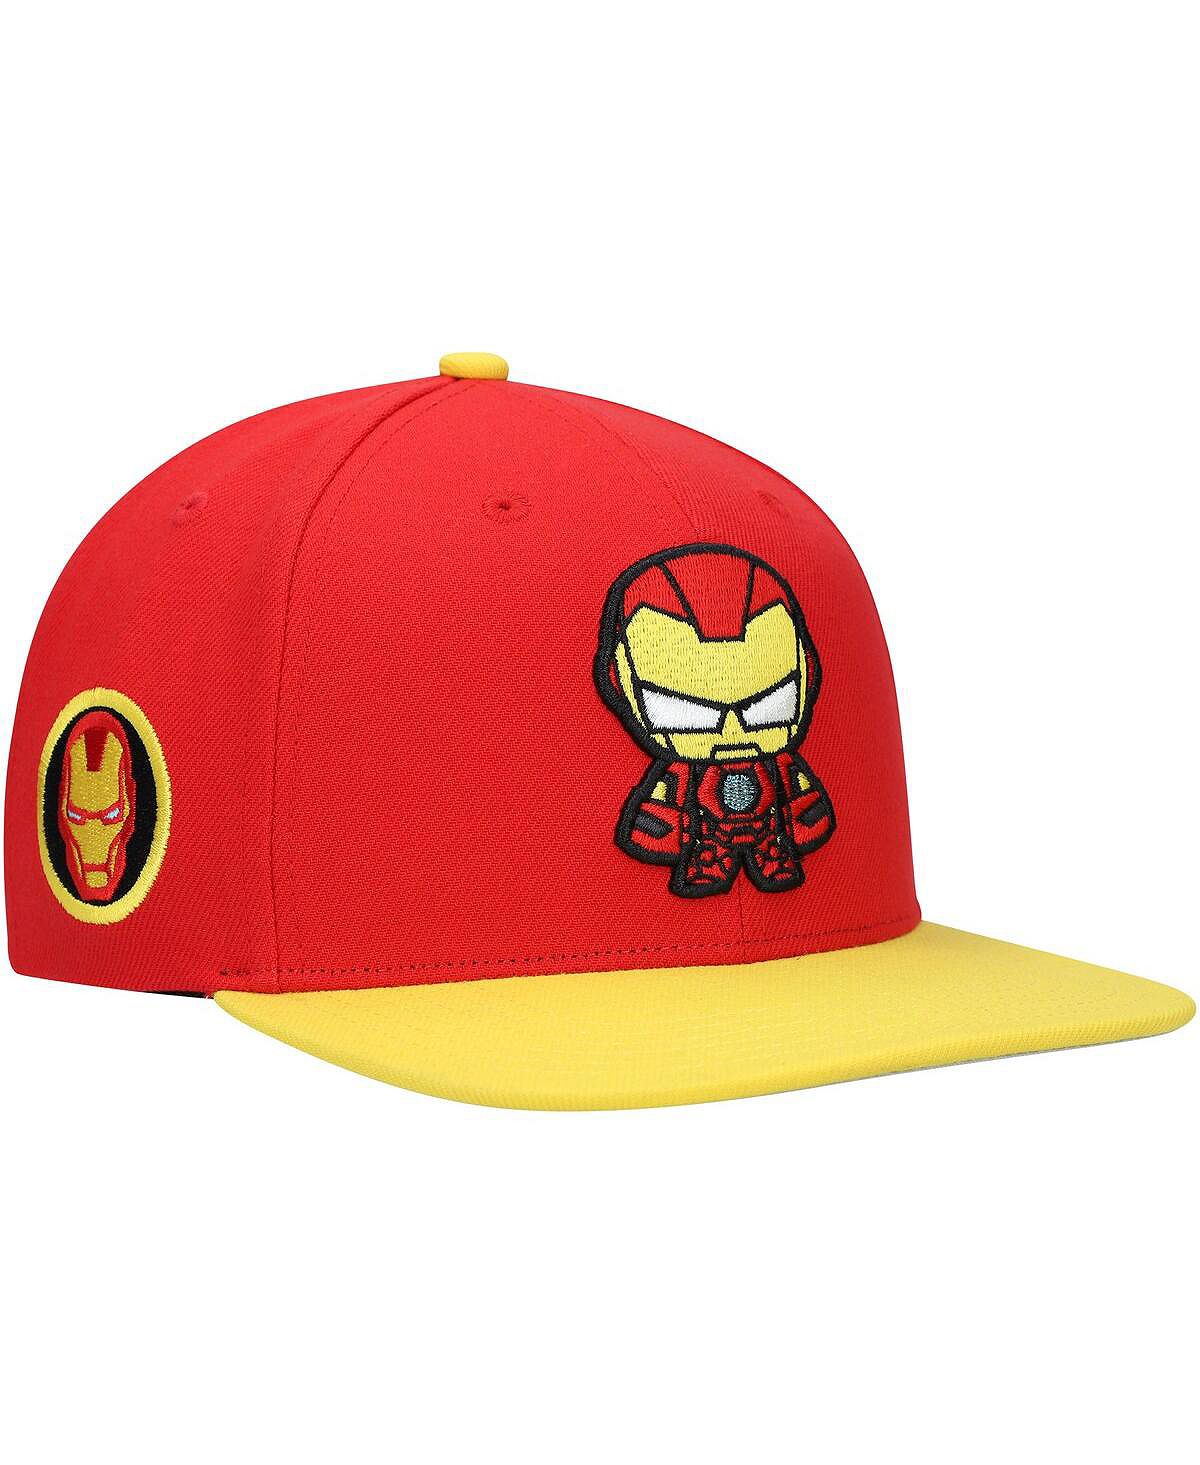 Молодежная шляпа Snapback с изображением персонажа Красного Железного человека для мальчиков и девочек Lids